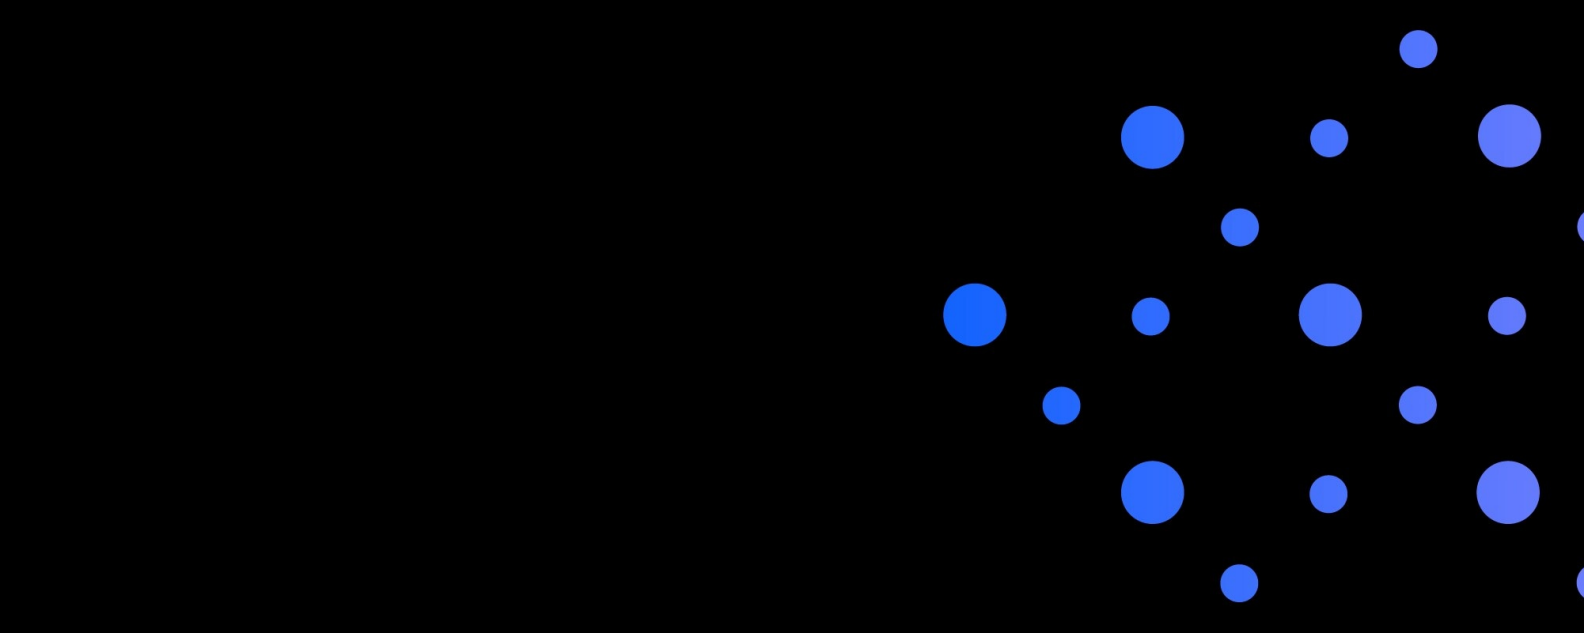 Imagen de espacio principal con grandes puntos azules